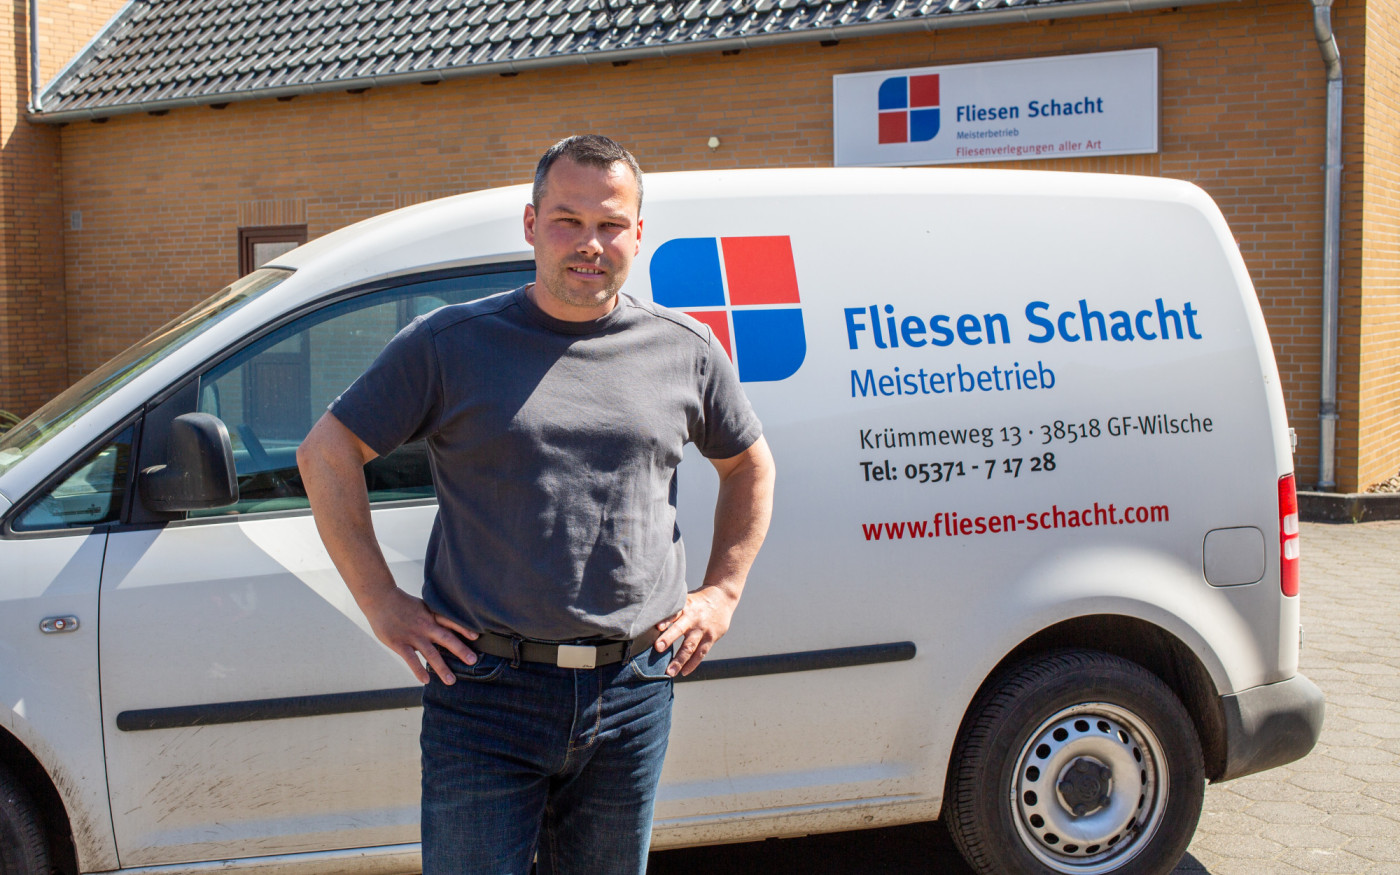 Gifhorner Meisterbetrieb Fliesen Schacht sucht neue Mitarbeiter